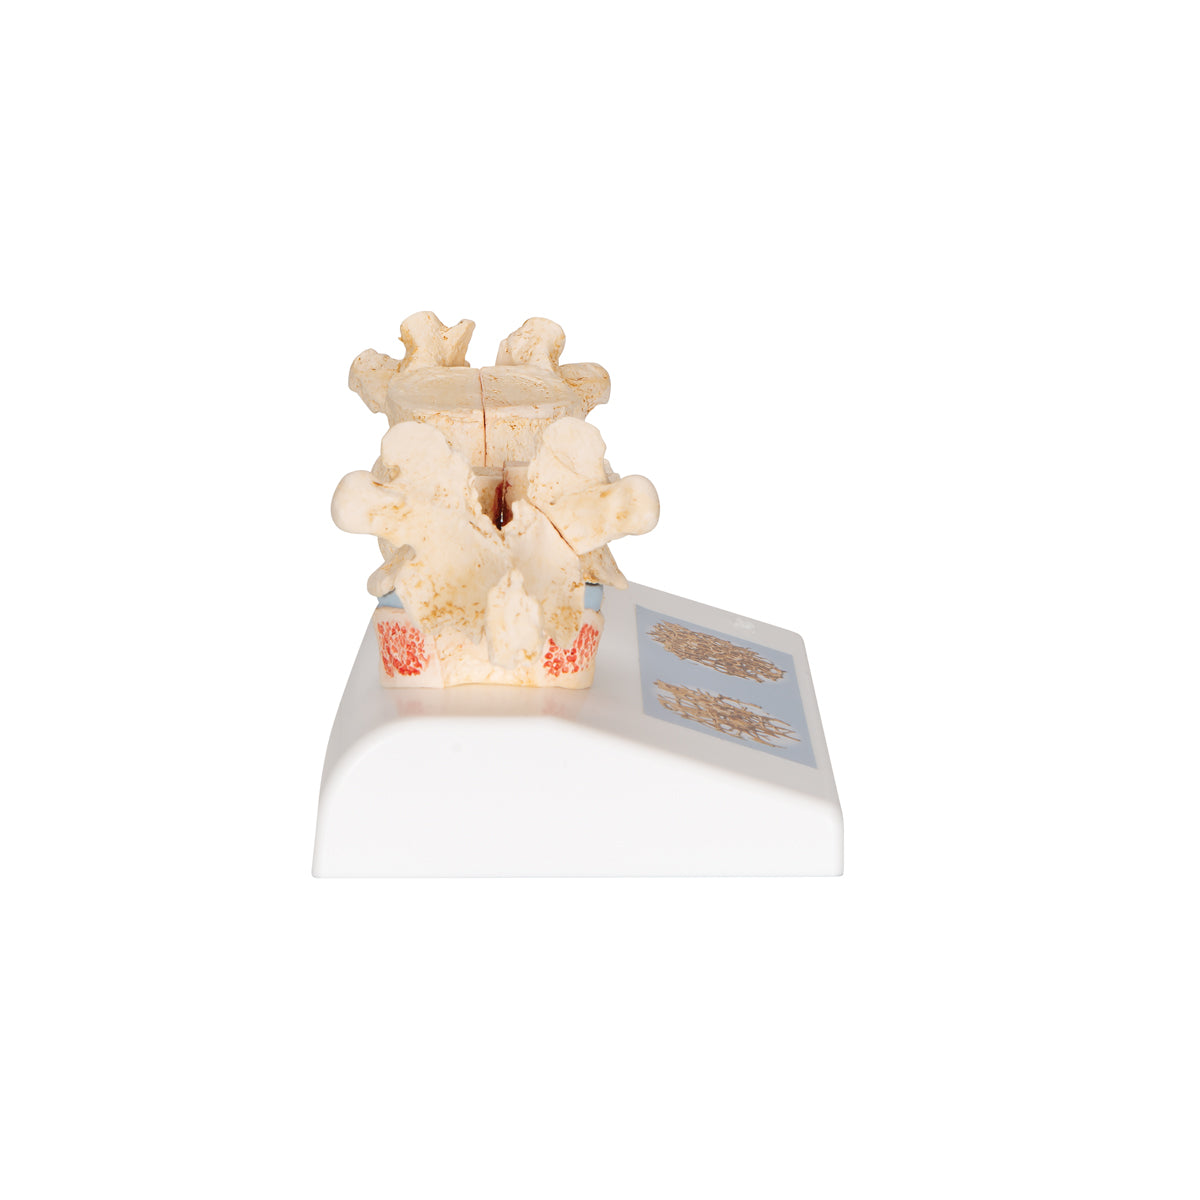 Anatomisk modell av kotor som illustrerar osteoporos vs frisk benvävnad